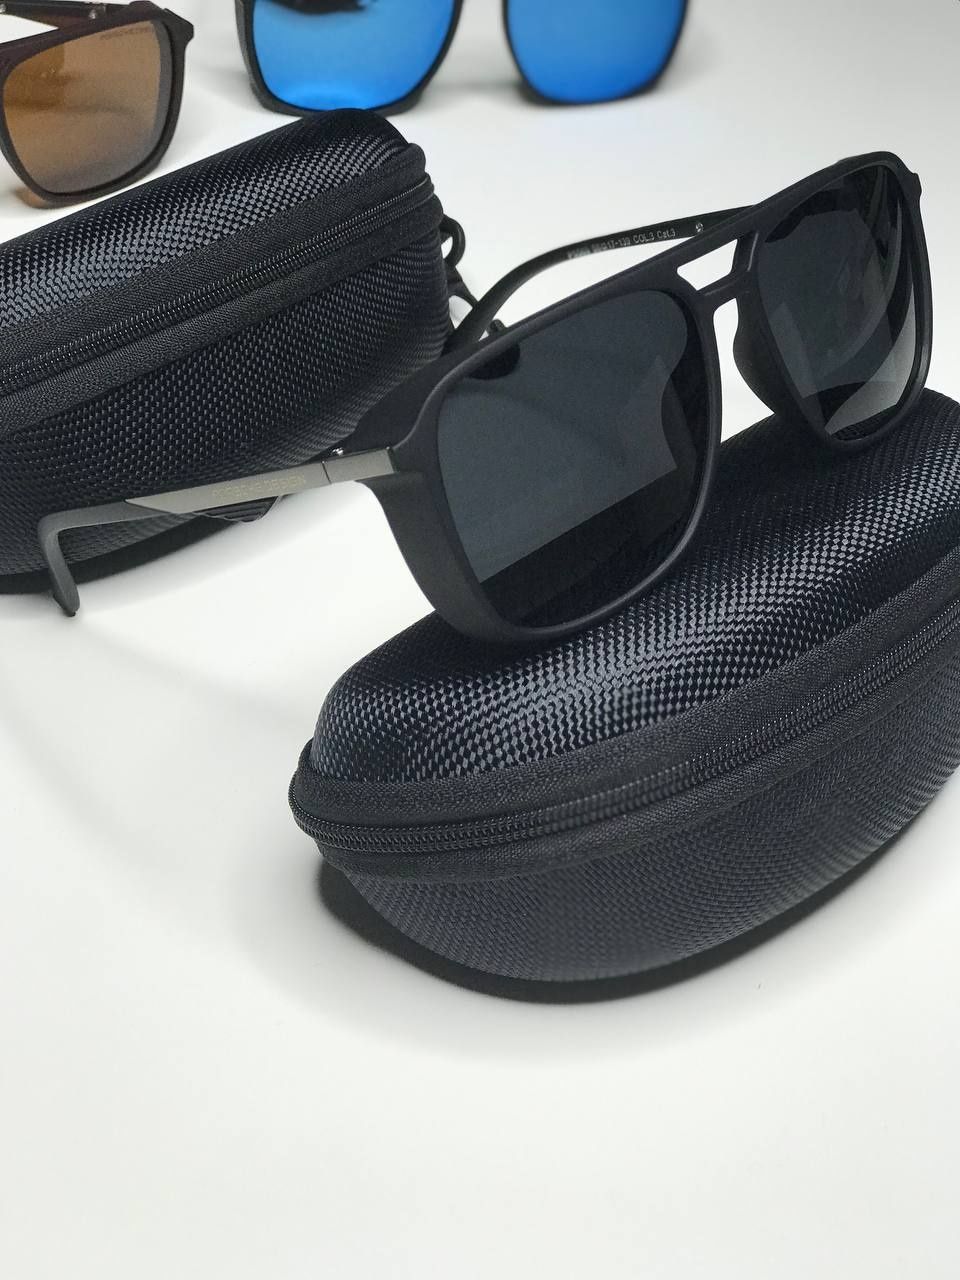 Мужские солнцезащитные очки Matrix черные матовые Polarized со шторкой